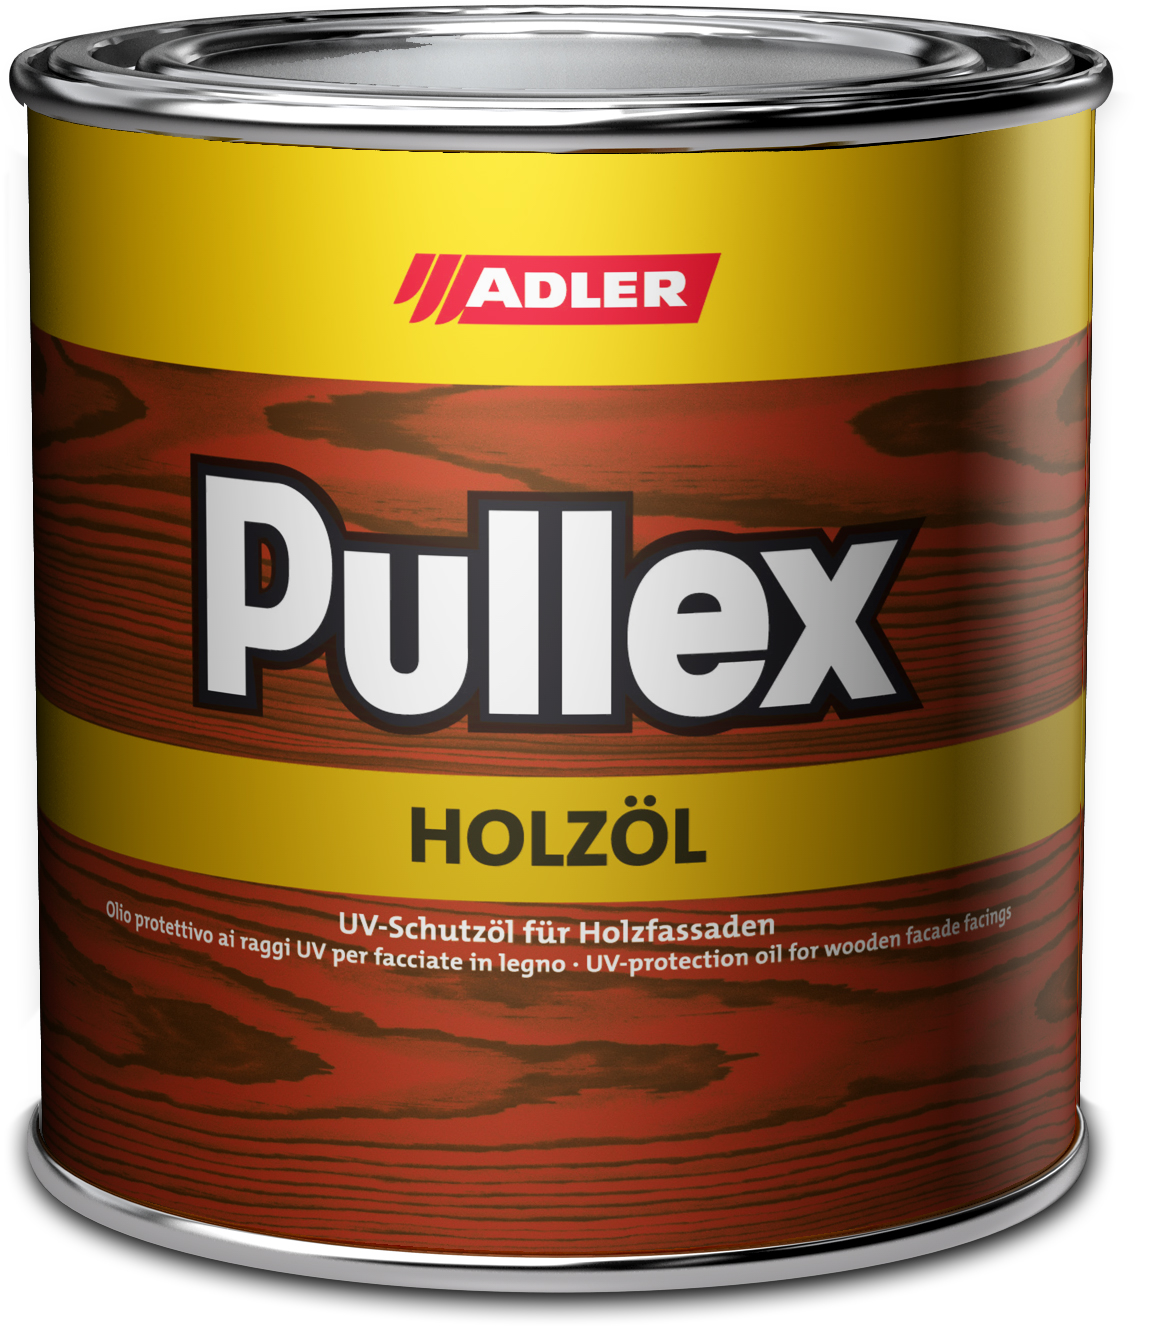 ADLER PULLEX HOLZÖL - UV ochranný olej na drevodomy a drevené obloženie ST 05/1 - rennmaus 10 L